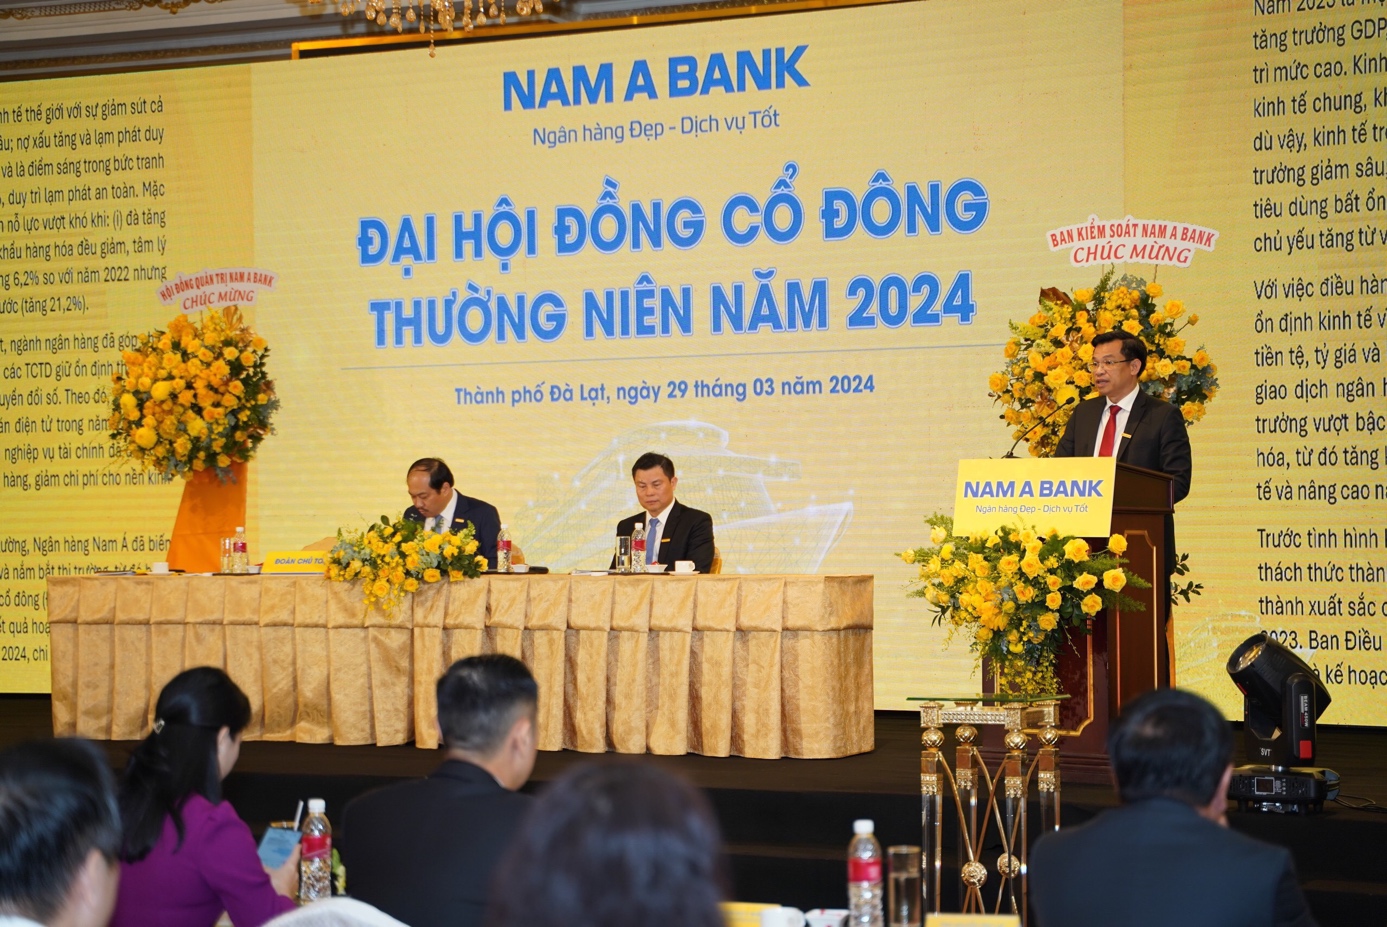 Nam A Bank tổ chức thành công Đại hội đồng cổ đông thường niên năm 2024 với những quyết sách chiến lược- Ảnh 2.